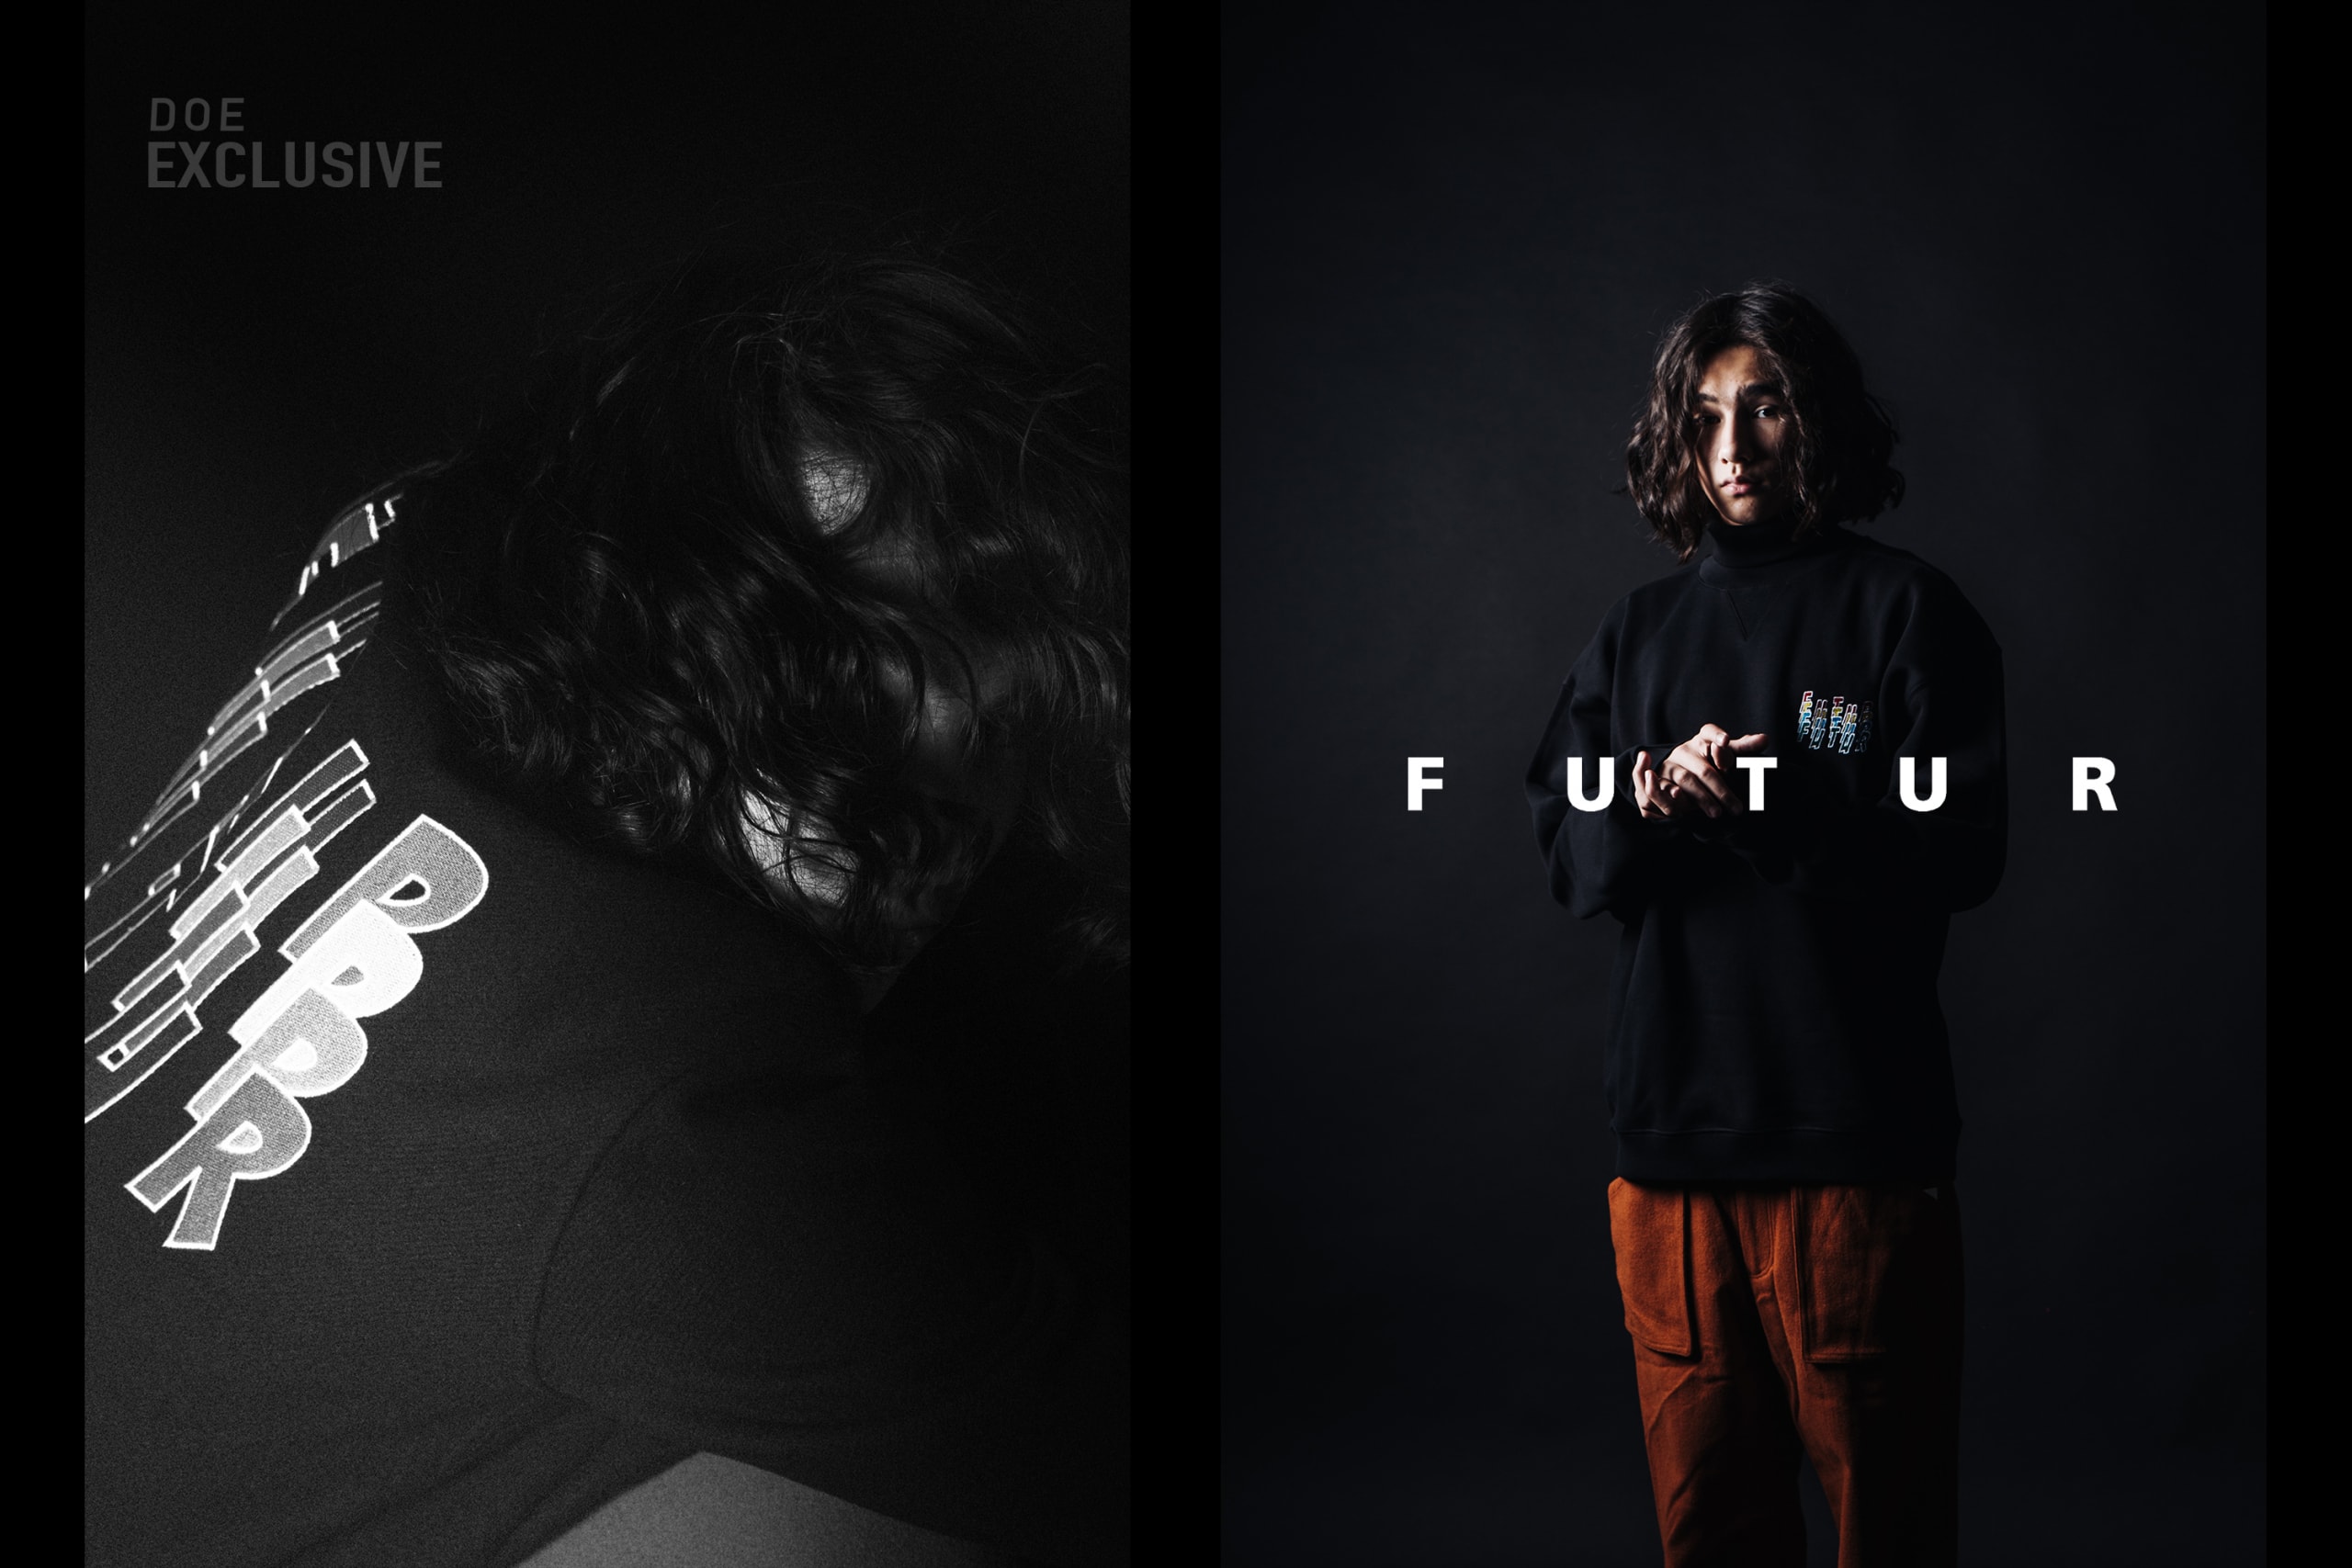 法国滑板品牌 FUTUR 发布 DOE 独占系列